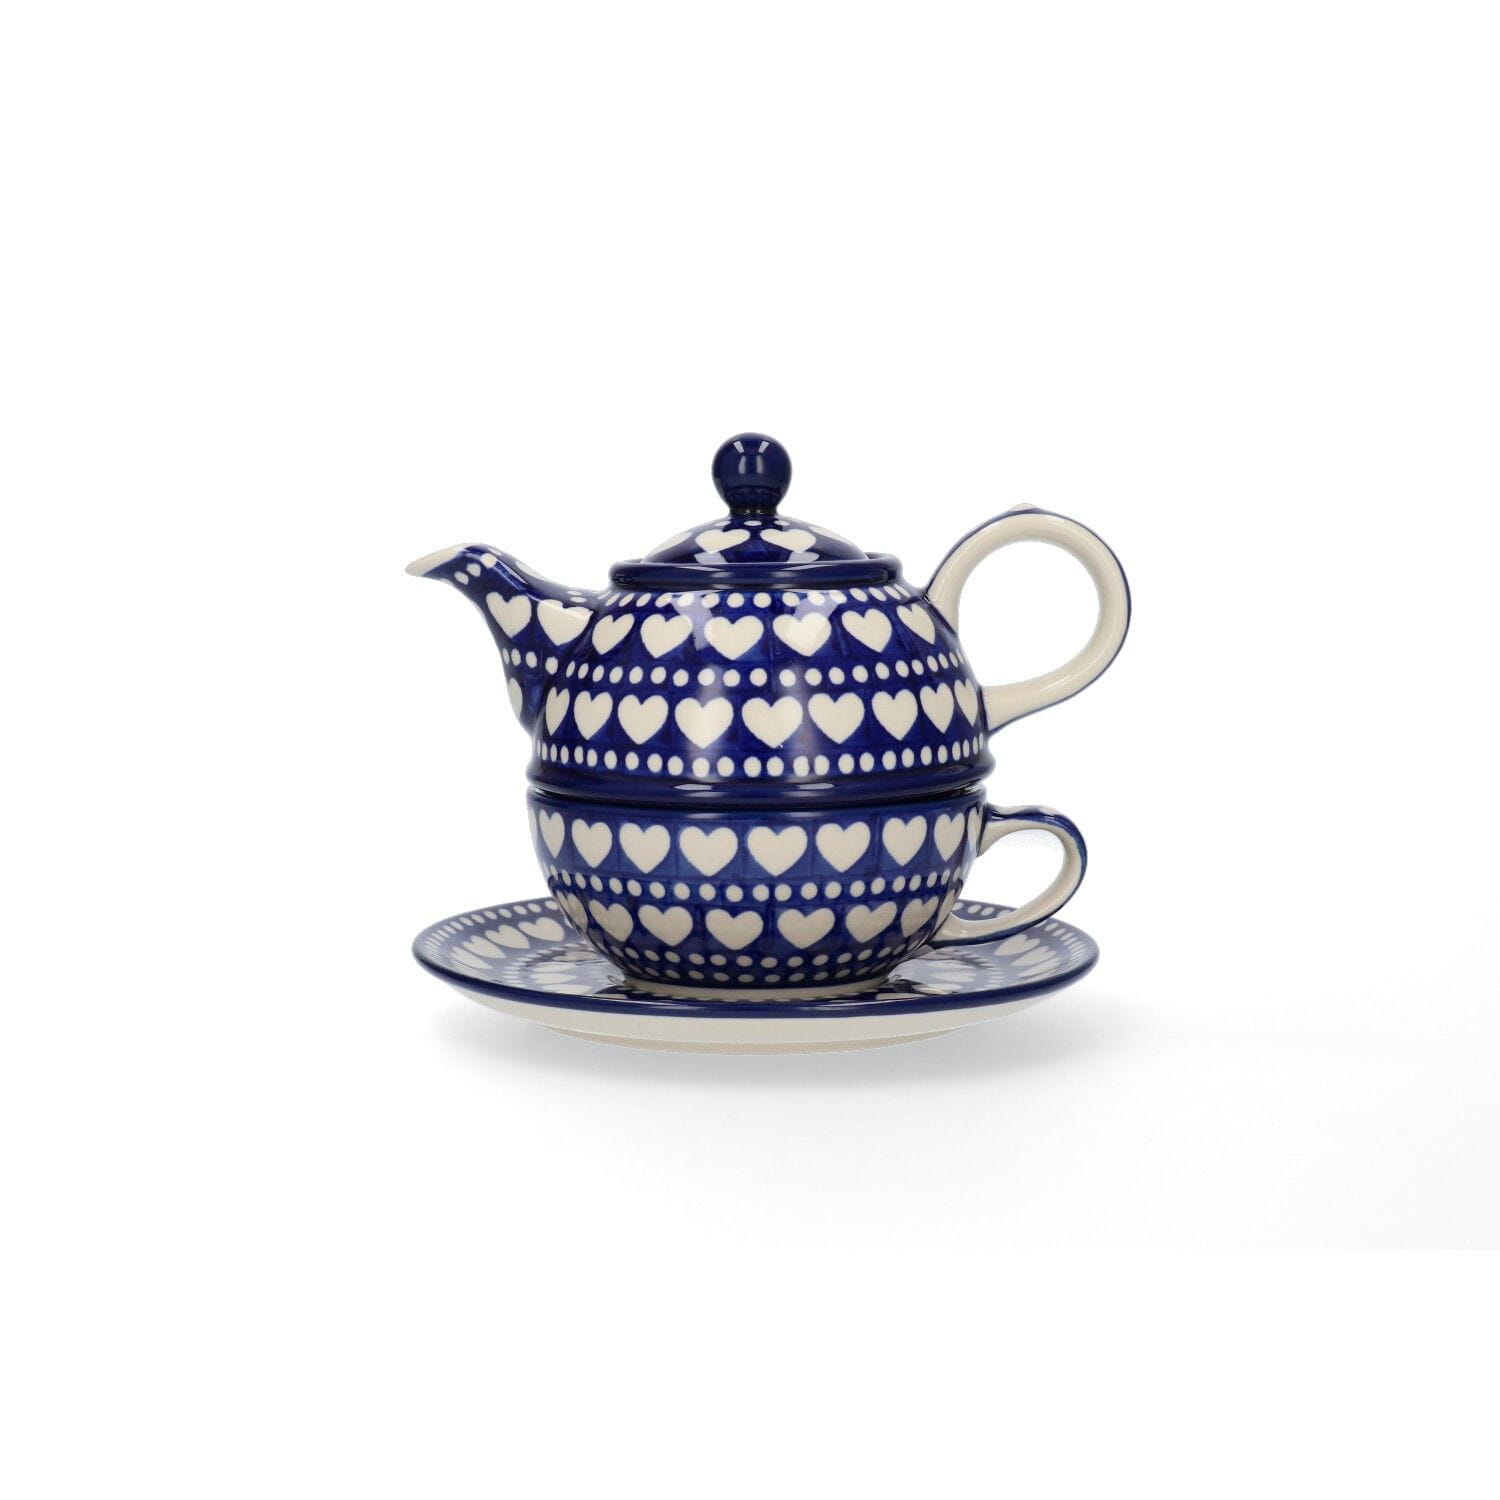 Bunzlau Castle Keramik Set Tea for One 600 ml - Blue Valentine